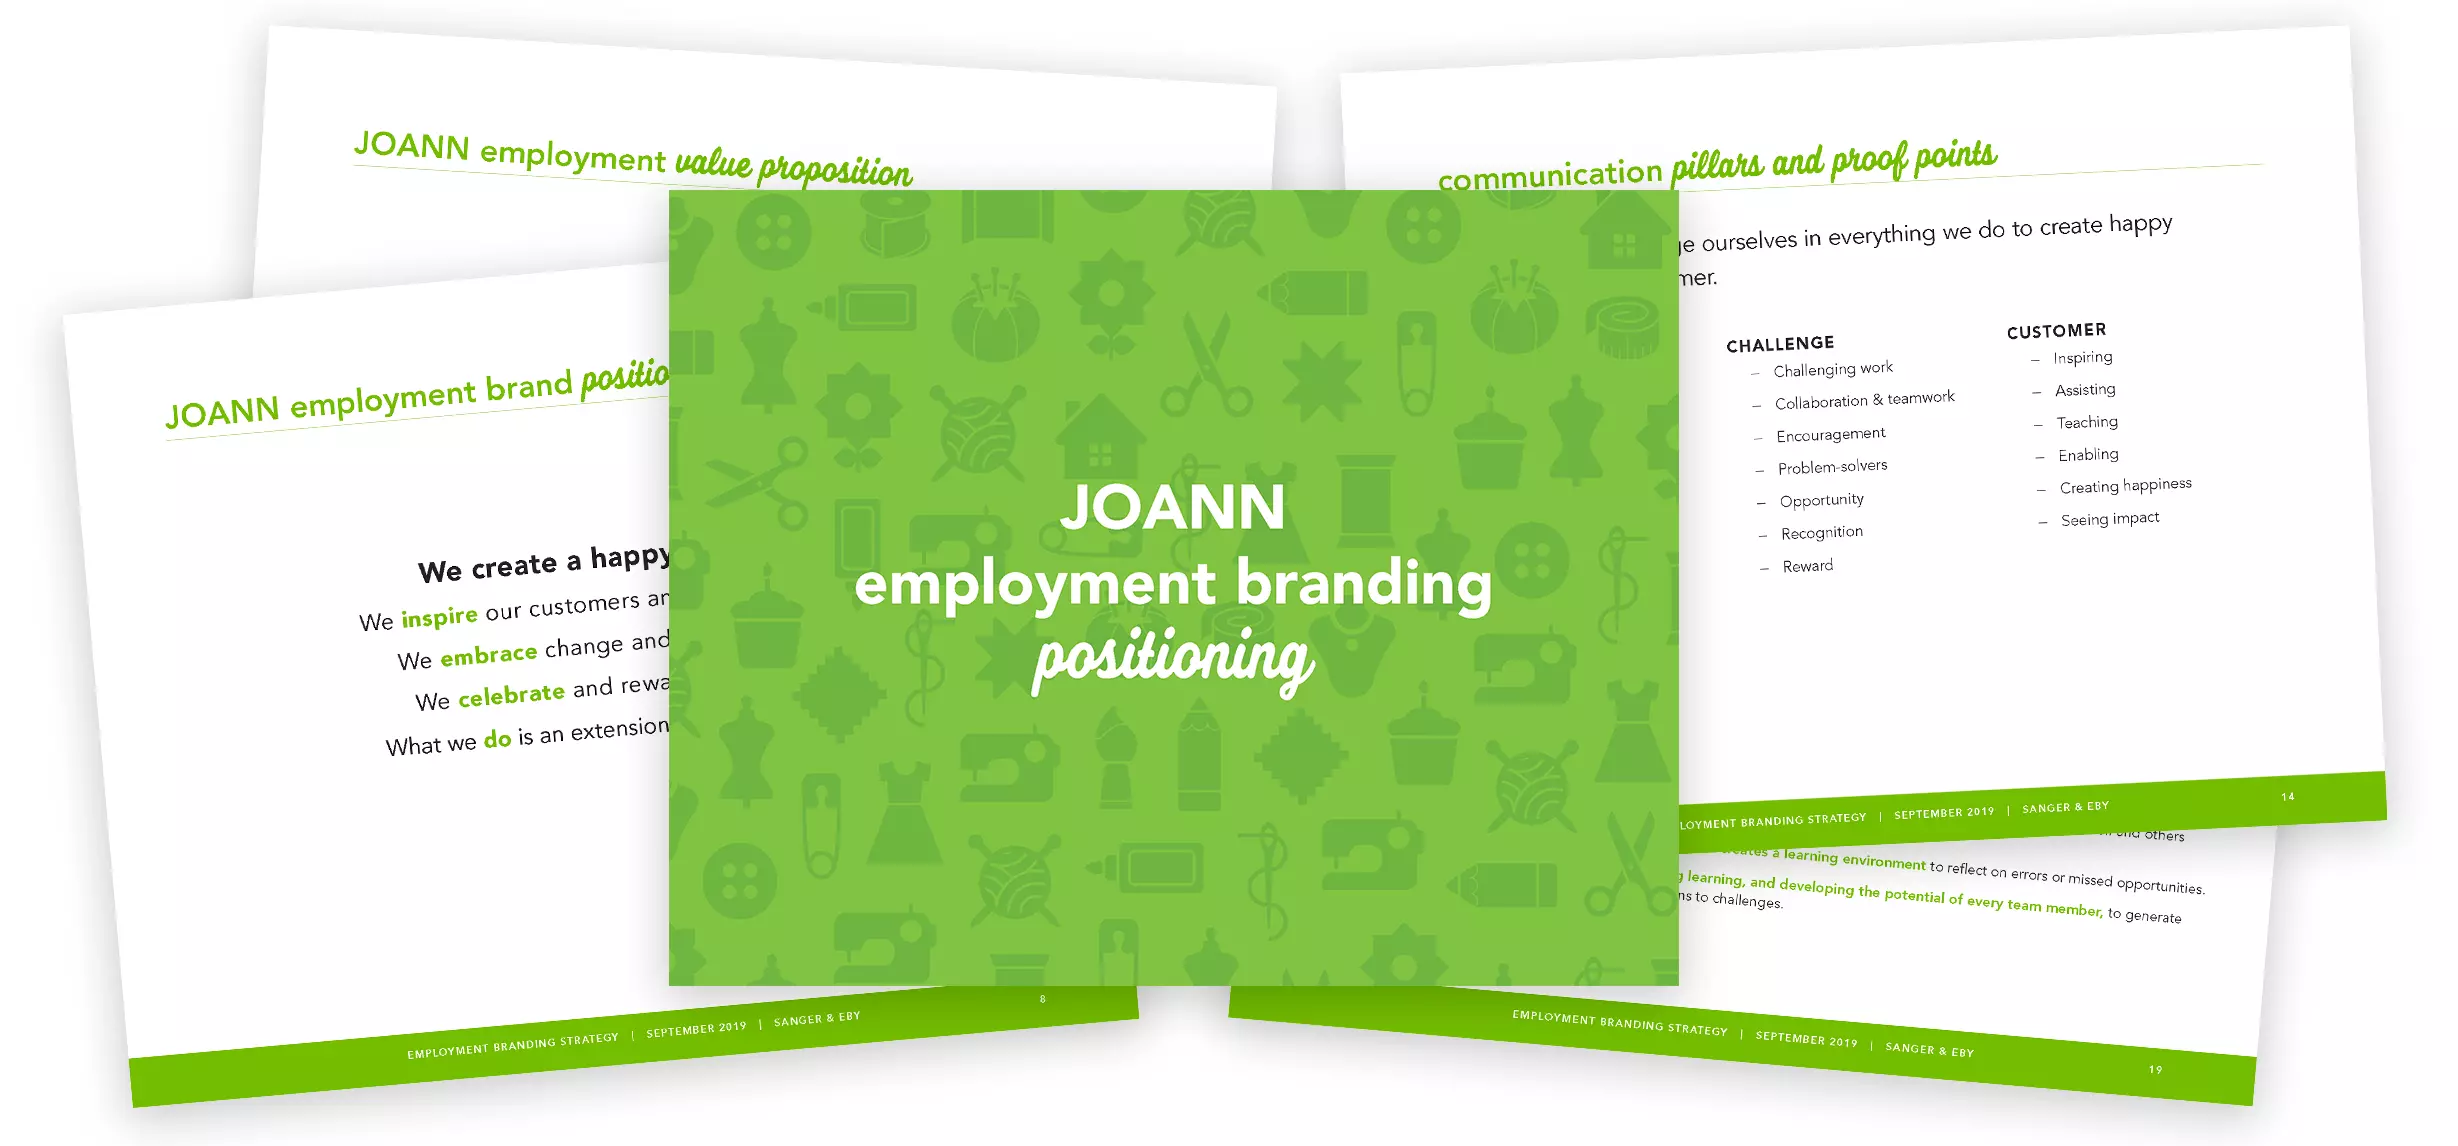 JOANN employer branding presentation